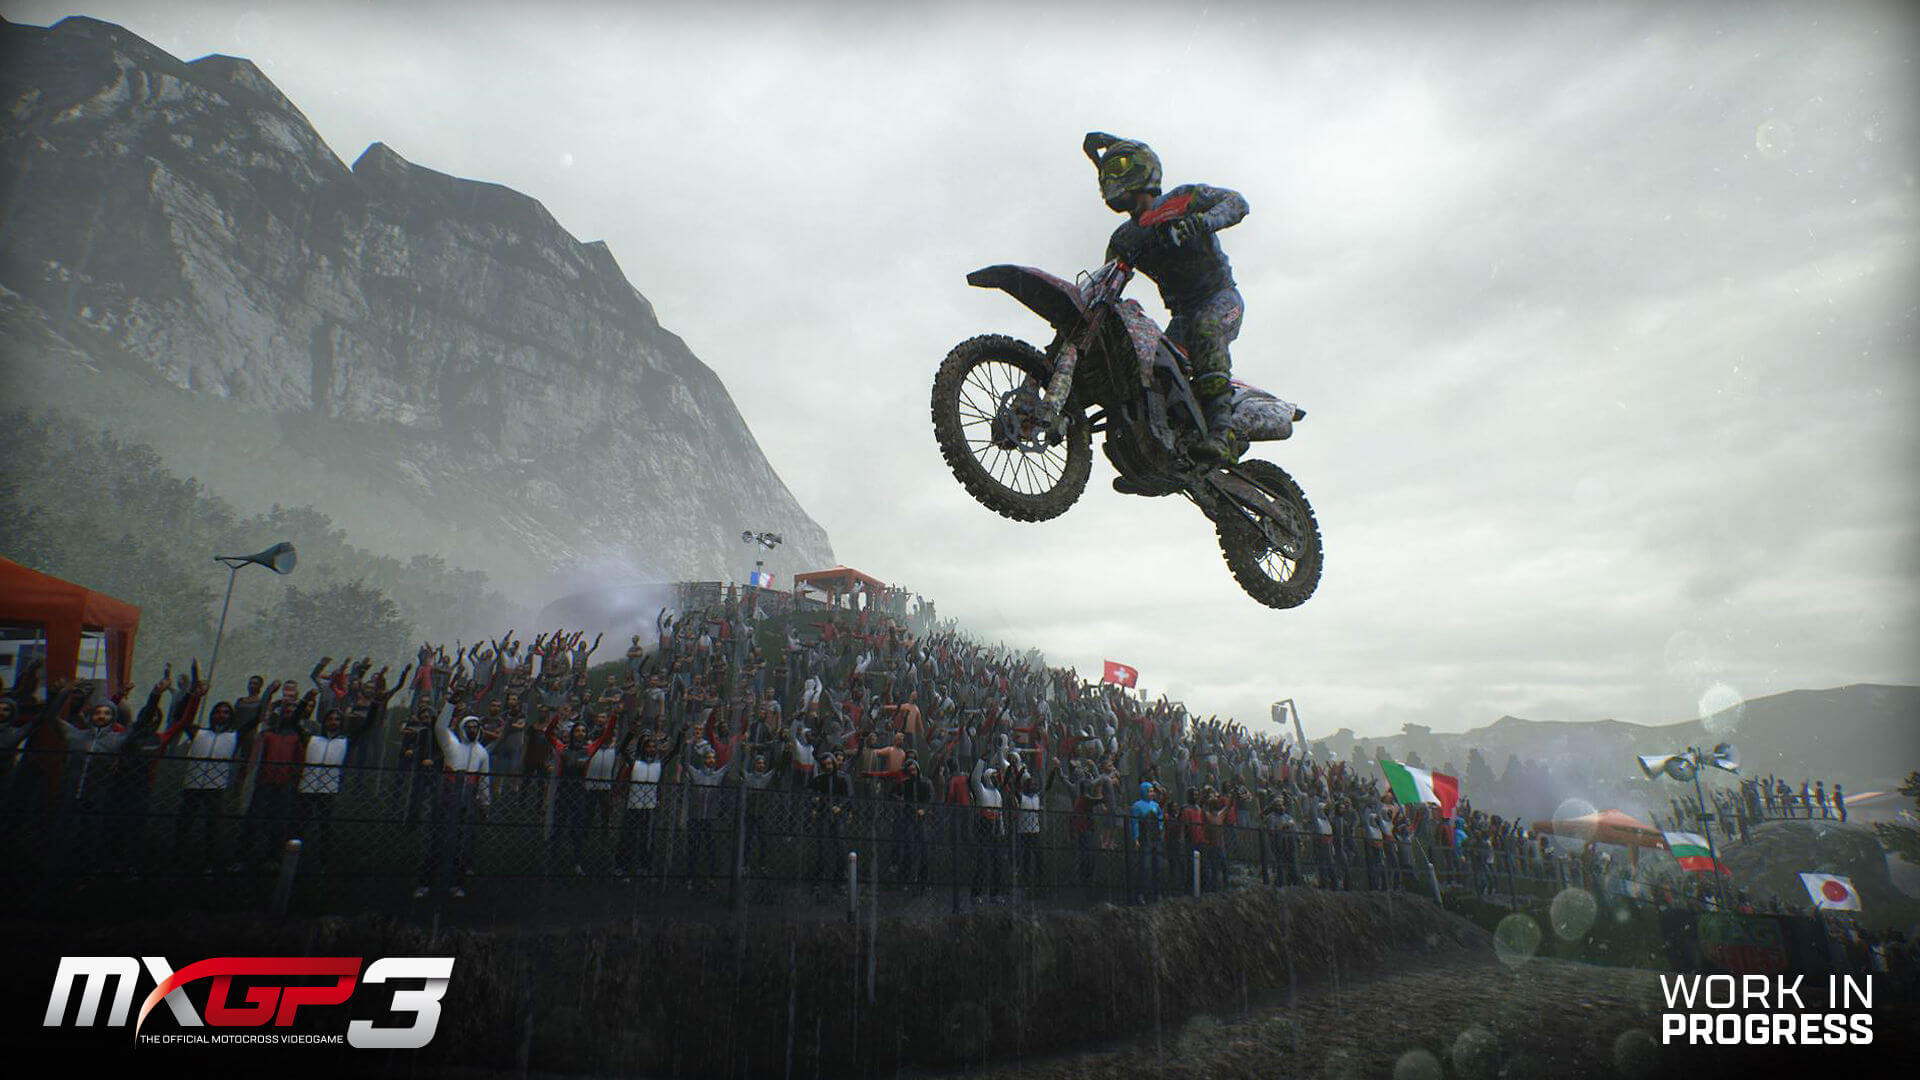 Jogo Mxgp The Oficial Motocross Videogame Para Ps3 em Promoção na